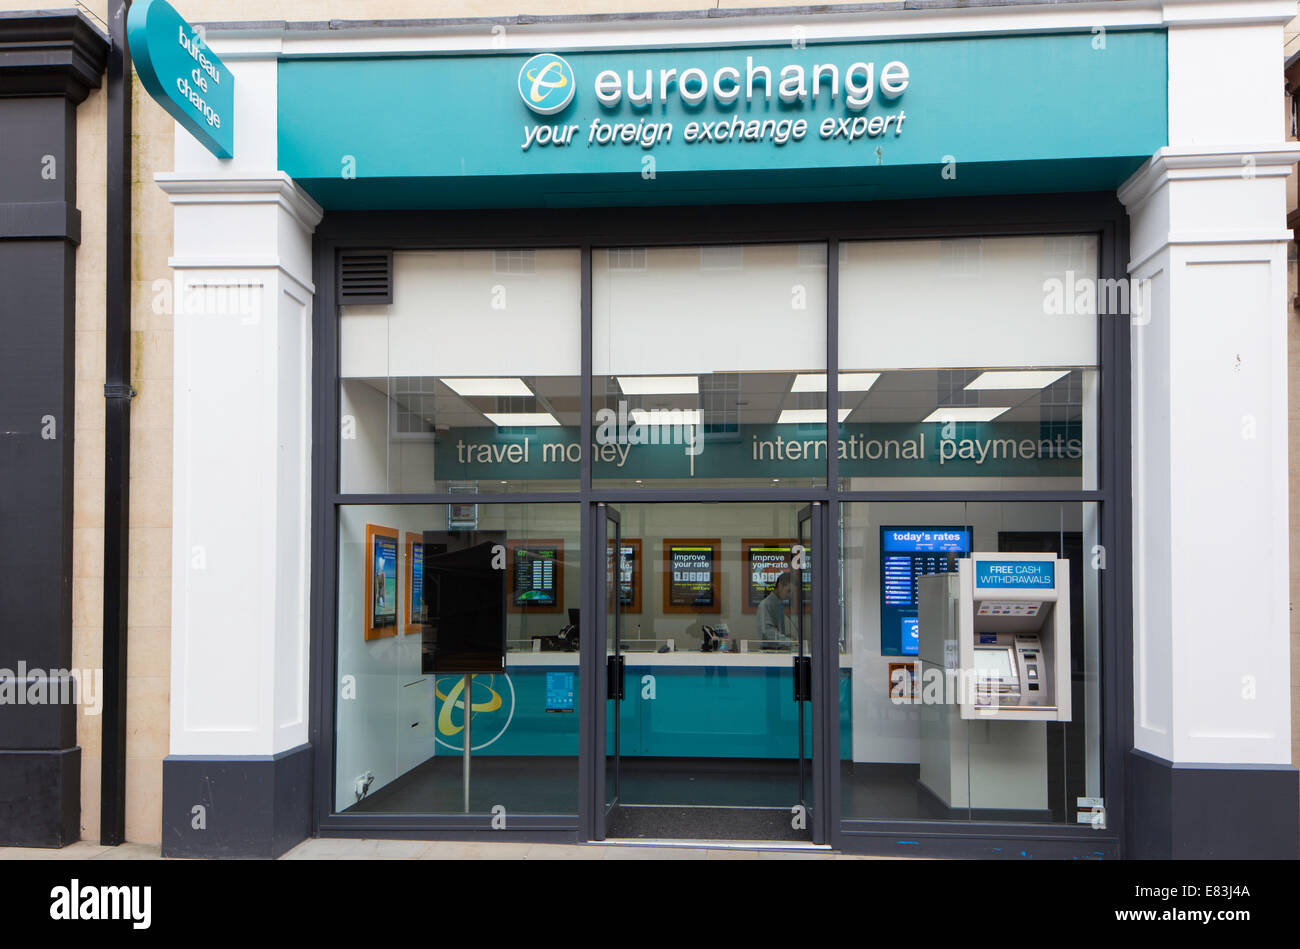 Eurochange branch, England, UK Stock Photo